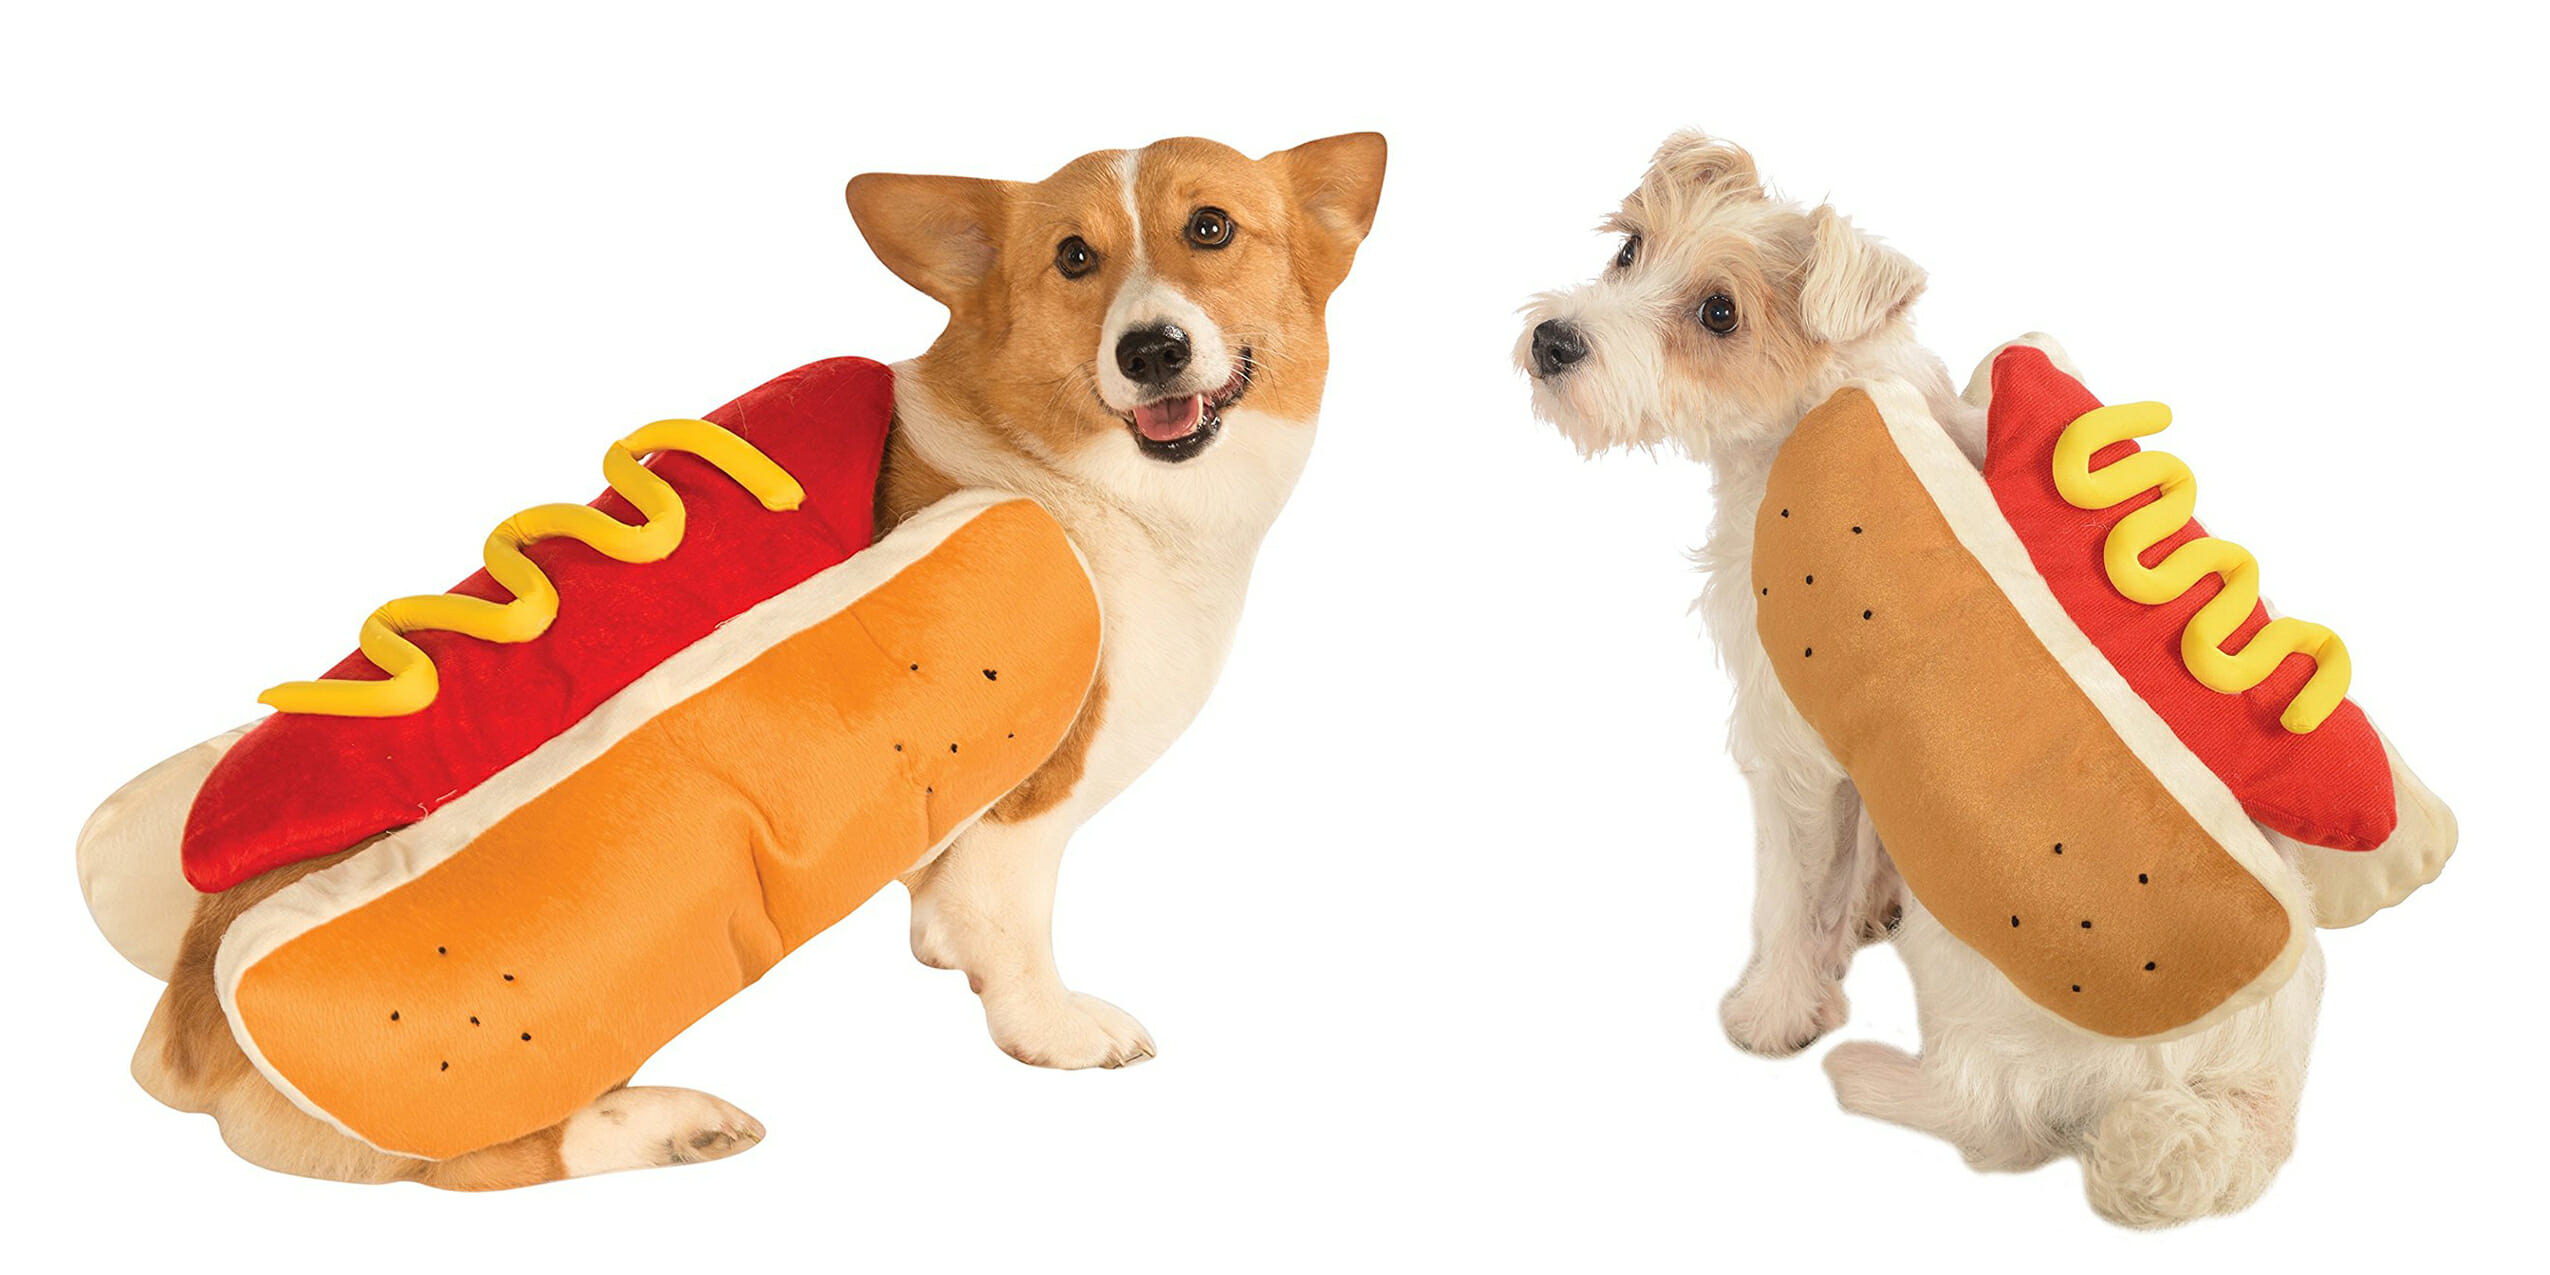 doggo bites hot dog game